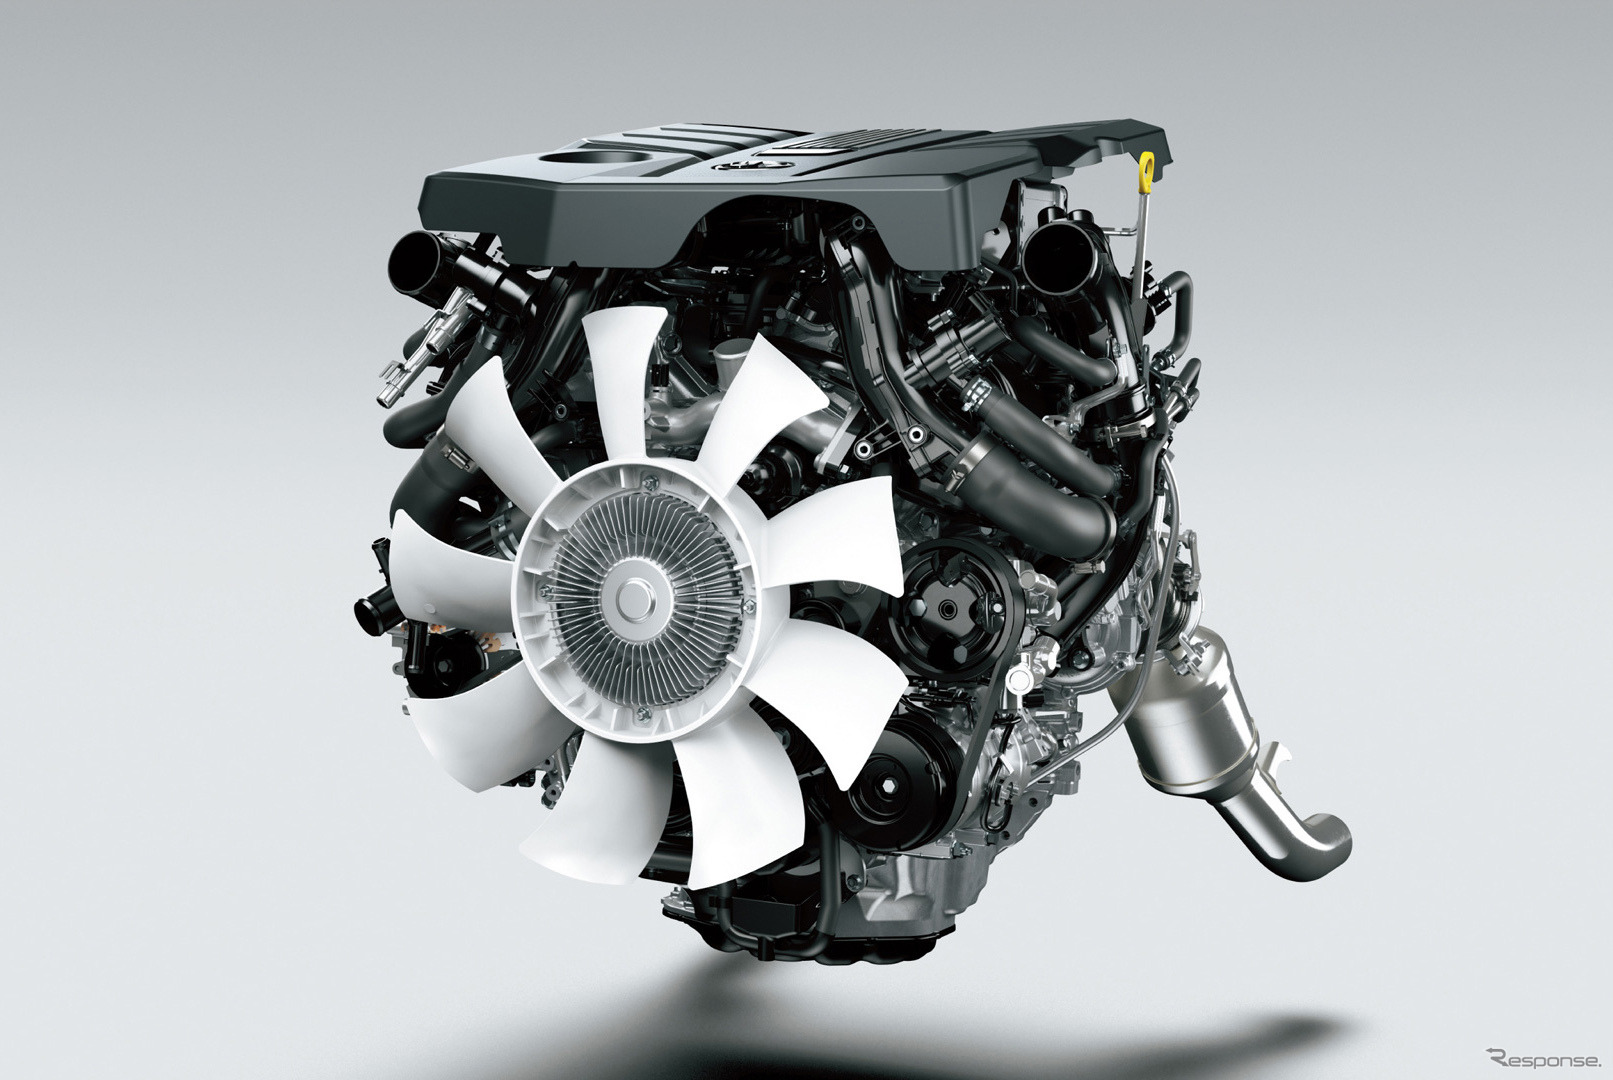 トヨタ ランドクルーザー 新型のV6ガソリン ツインターボエンジン